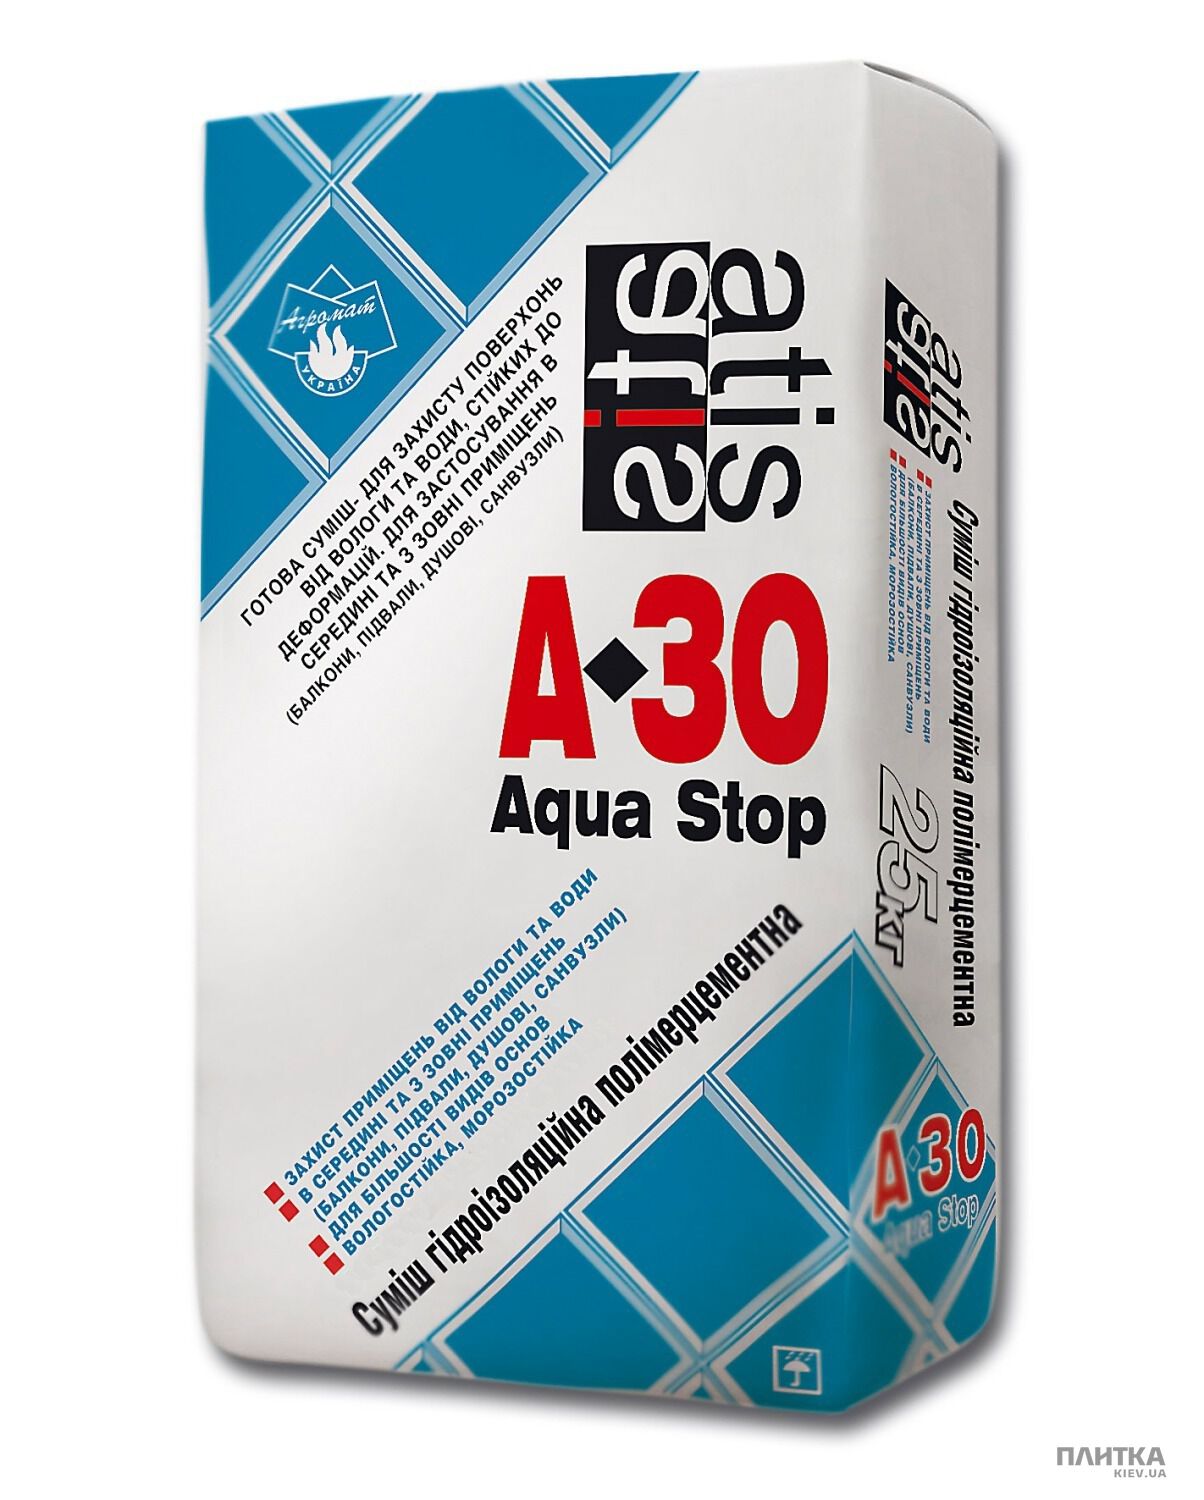 Гидроизоляция ATIS A-30 Aqua Stop, 25кг серый